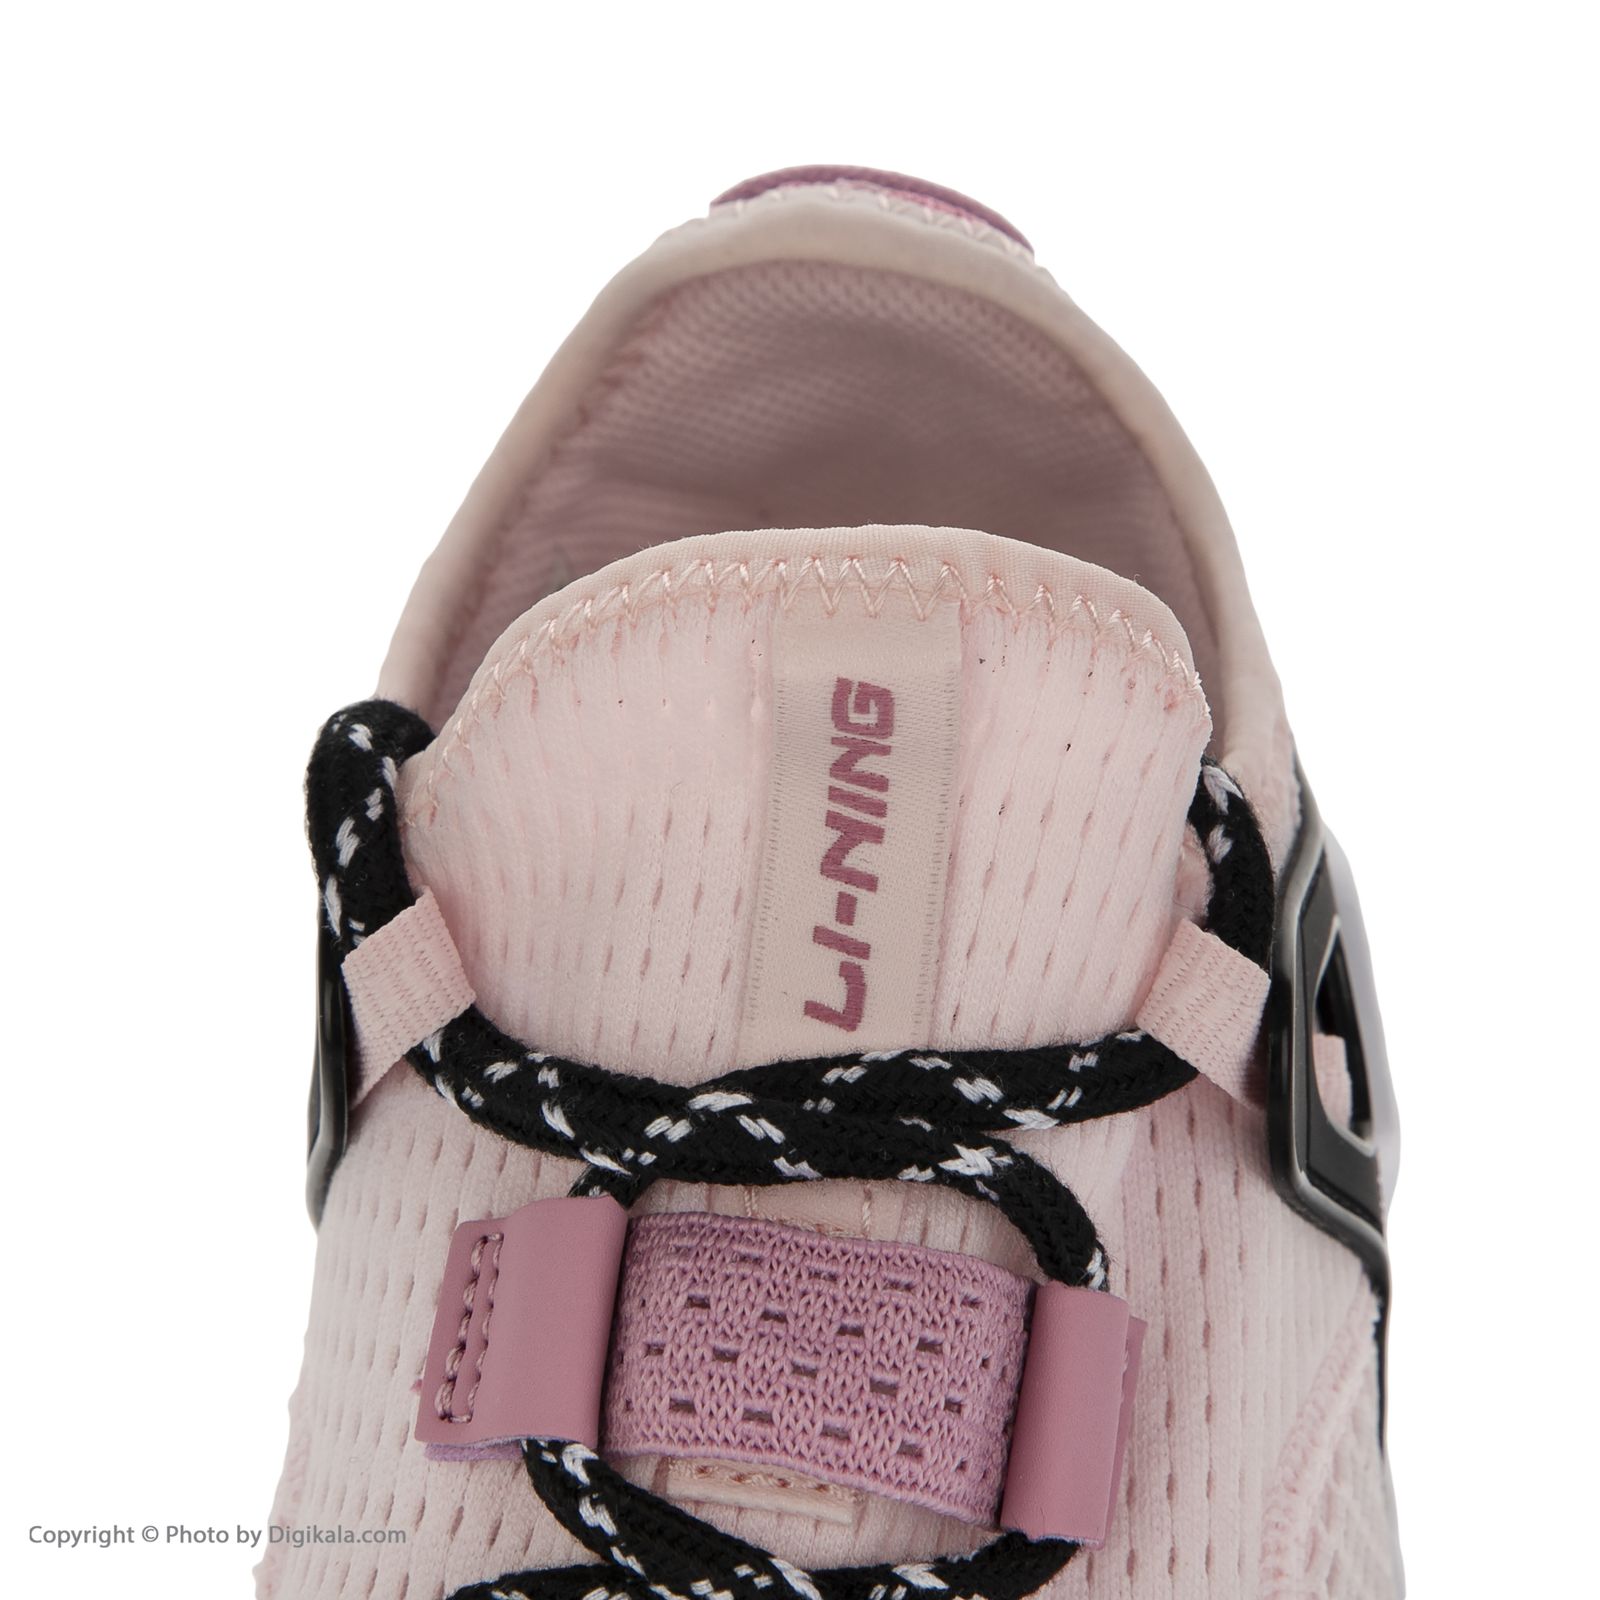 کفش پیاده روی زنانه لینینگ مدل AGLQ026-3 -  - 9